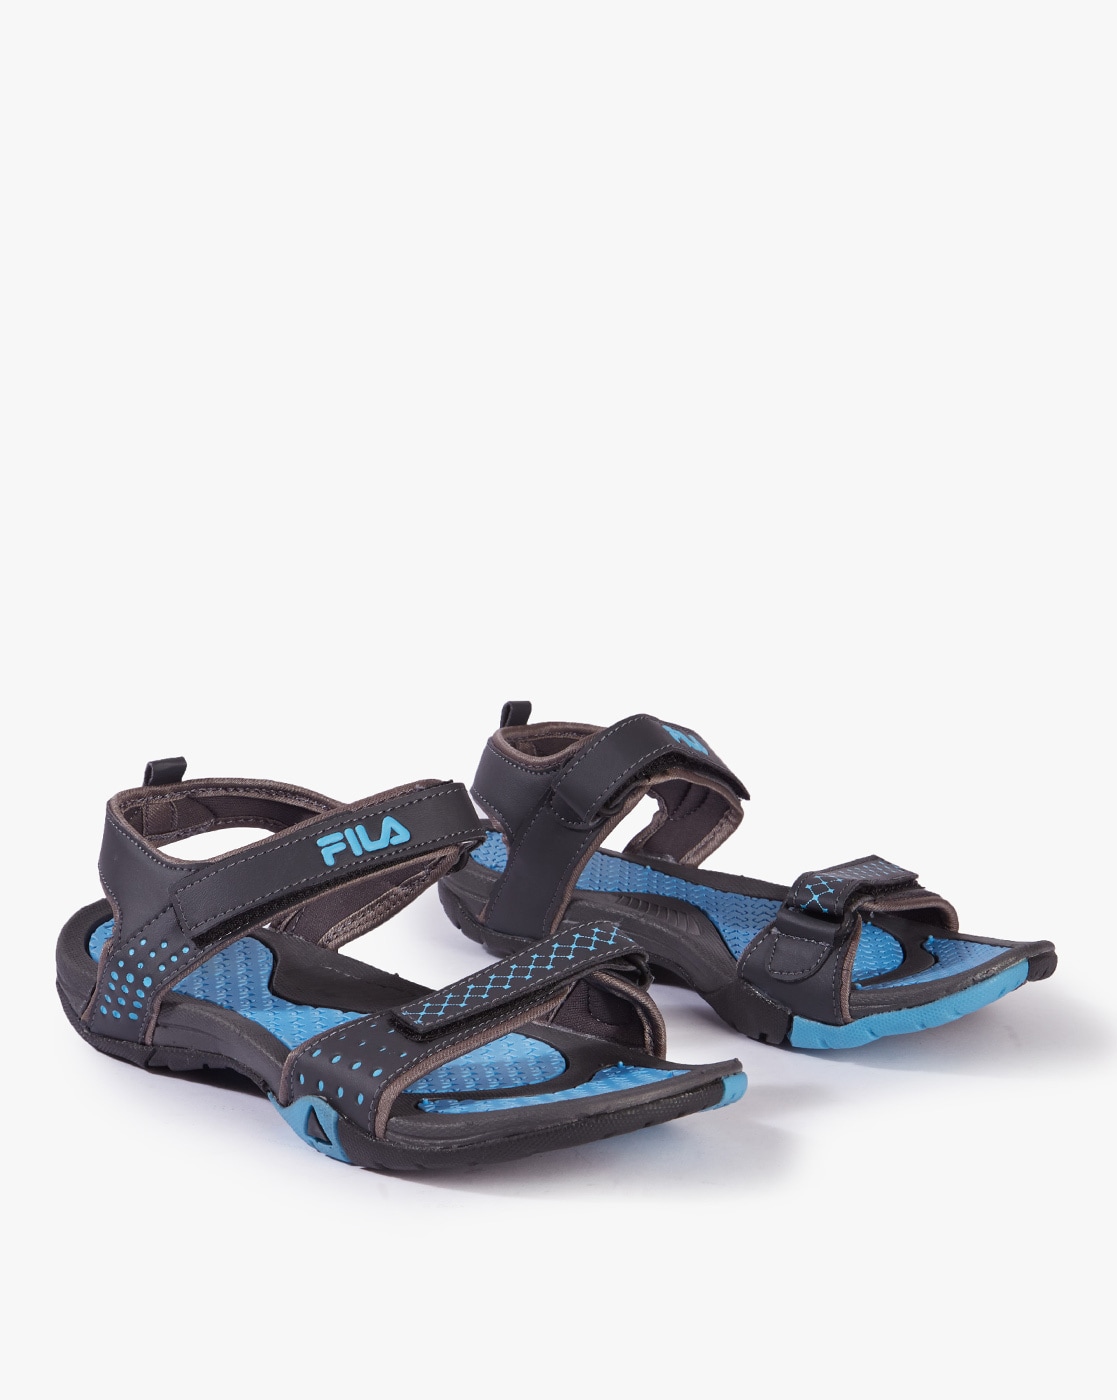 Buy Grey Sports Sandals for Women by FILA Online Ajio.com